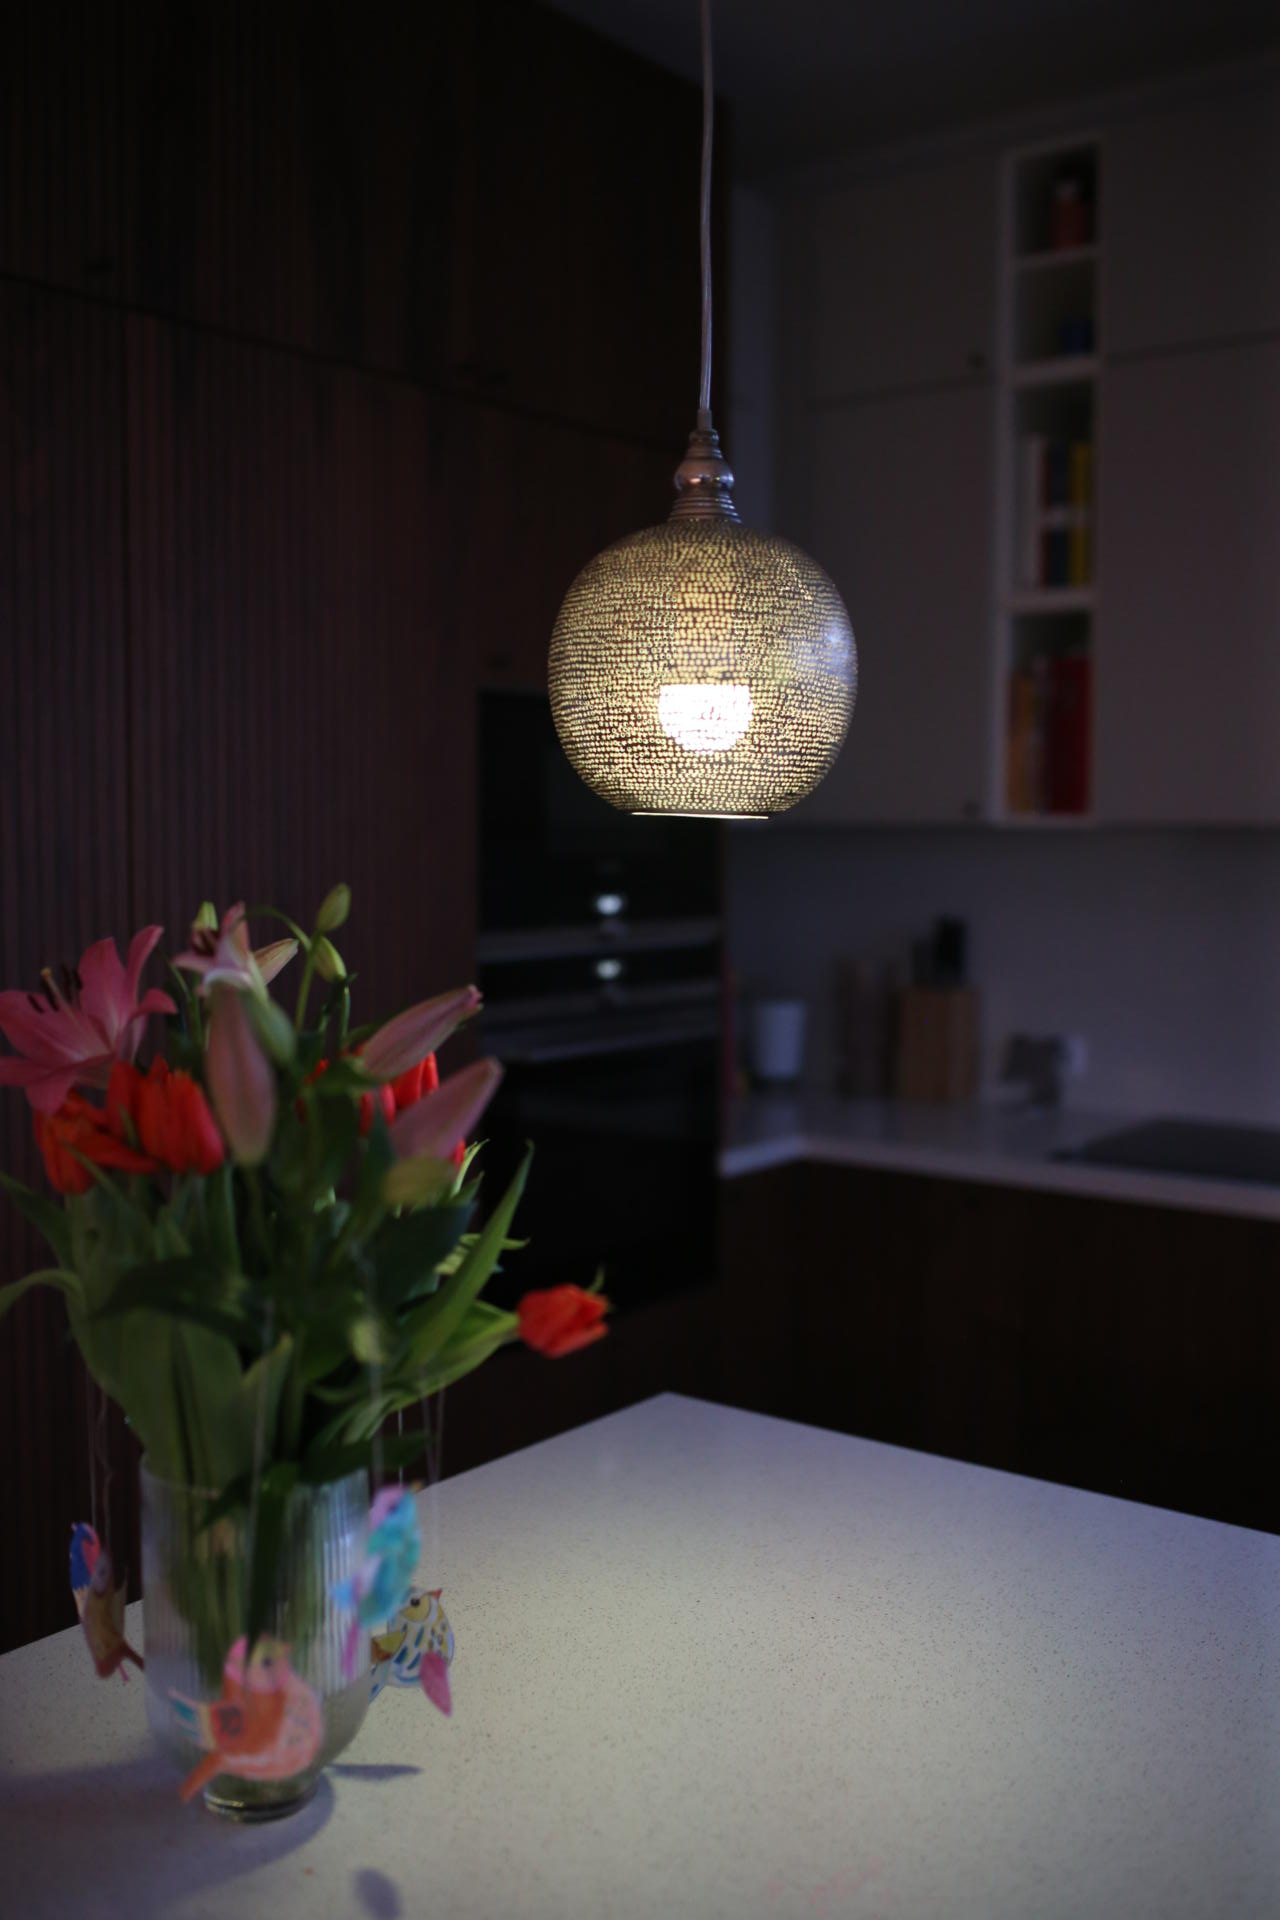 Mit WiZ ist bei uns ein drahtloses LED-Beleuchtungssystem in unsere Küche eingezogen, das mit Hilfe von WLAN und der WiZ App verbunden und über Smartphone, Tablet oder der WiZMote Fernbedienung gesteuert wird. Jeder Raum kann einzeln angepasst werden, um zu bestimmen, welche Lampe wann und in welchem Modus leuchten soll.